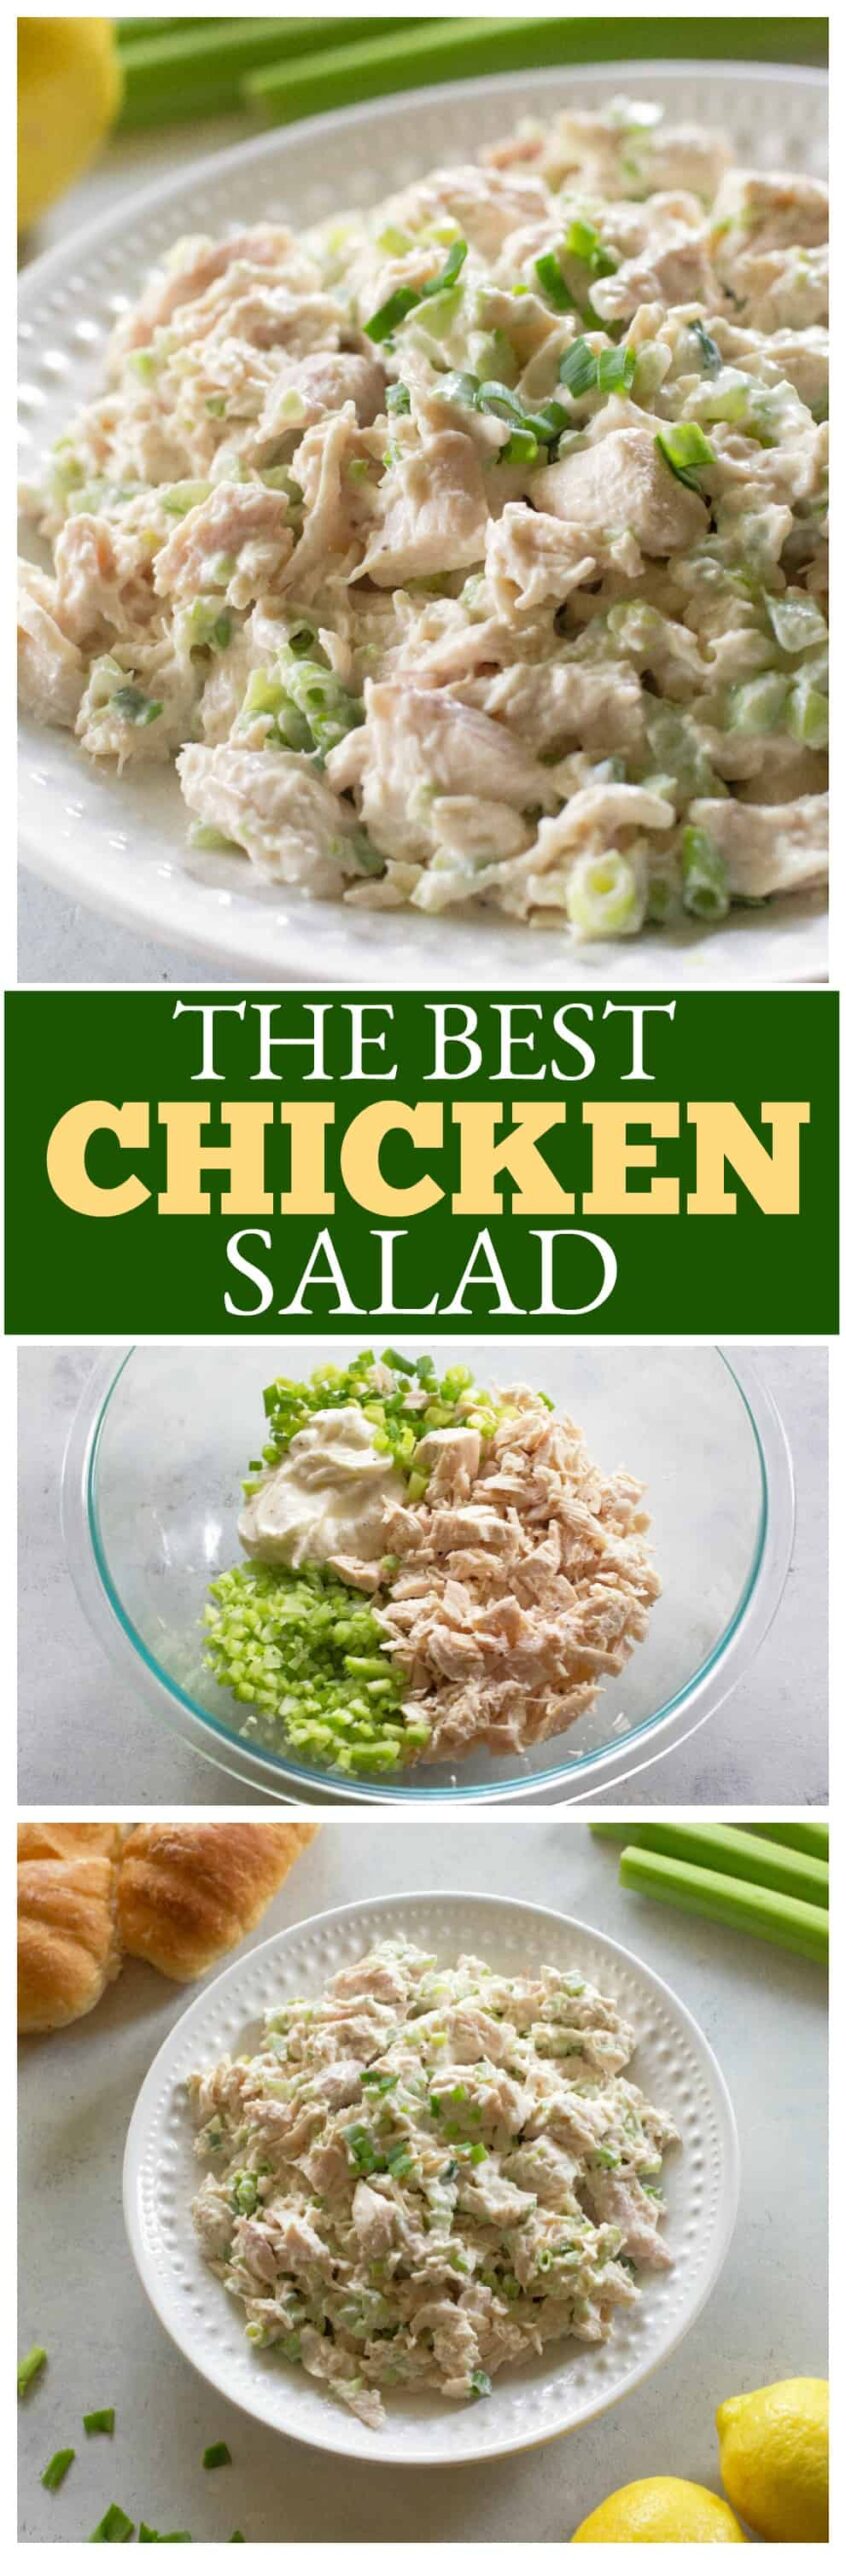 the best chicken salad scaled - Chicken Salad Recipe